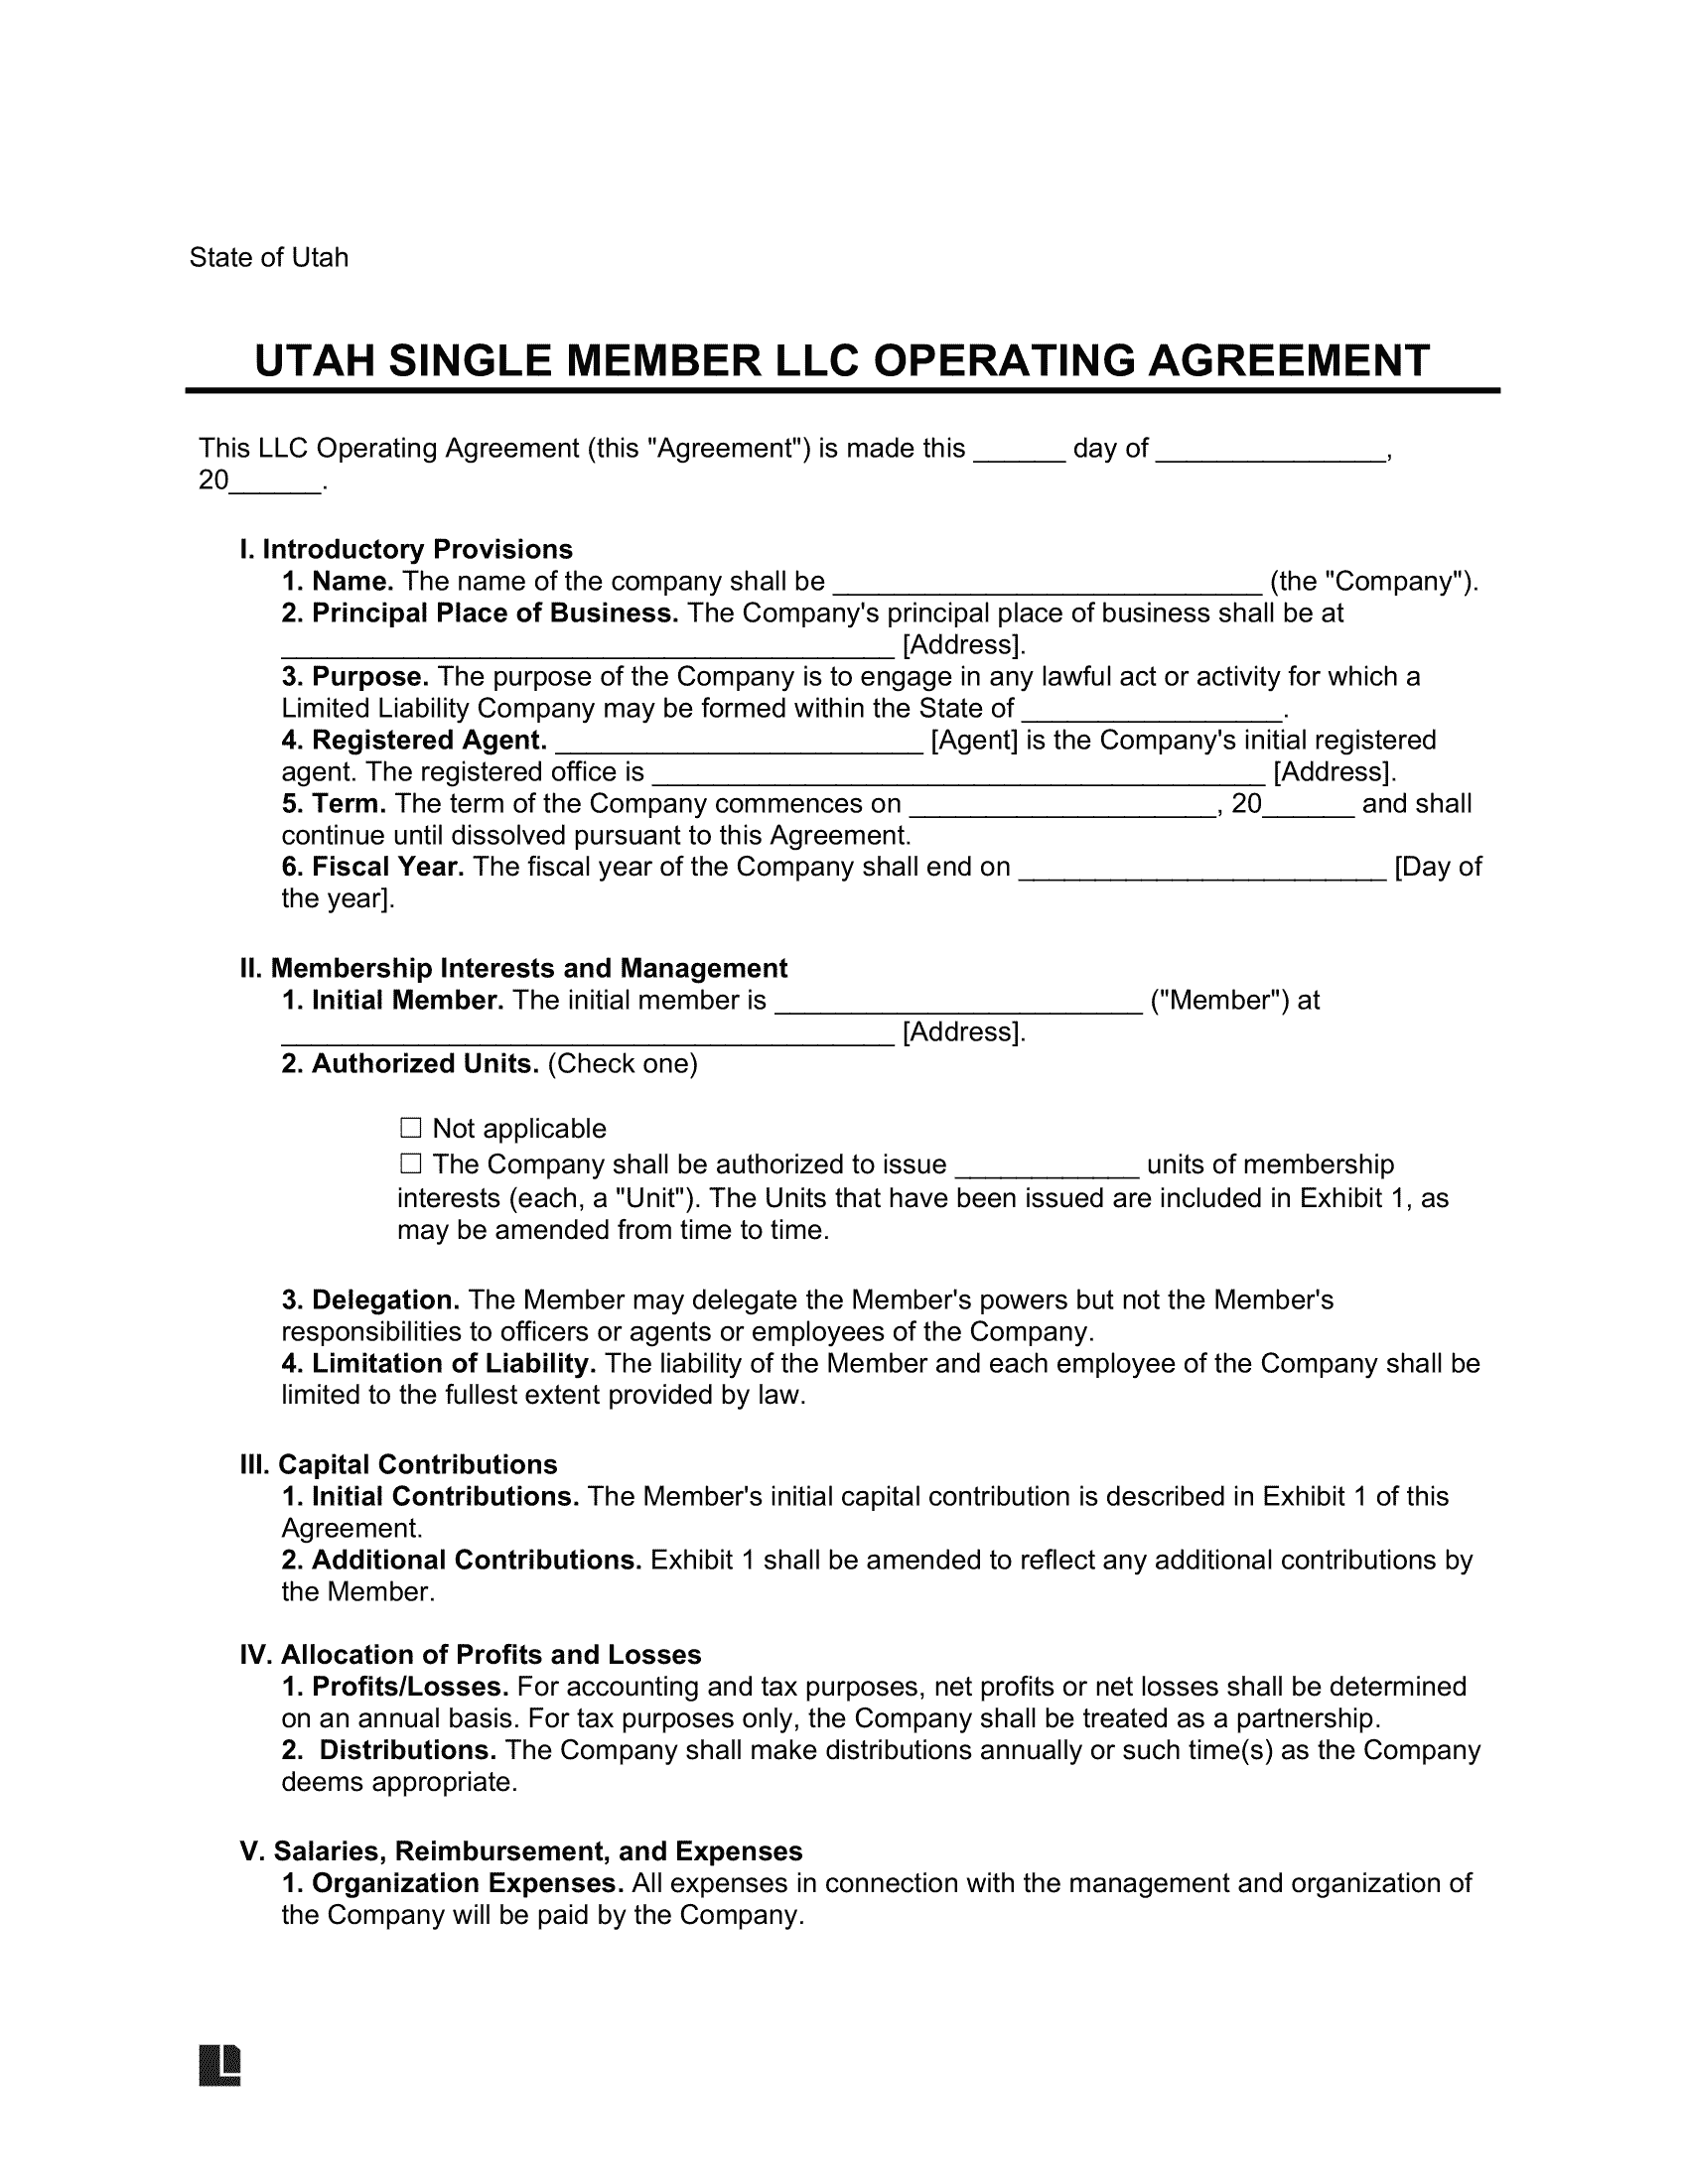 Utah Single Member LLC Operating Agreement Form